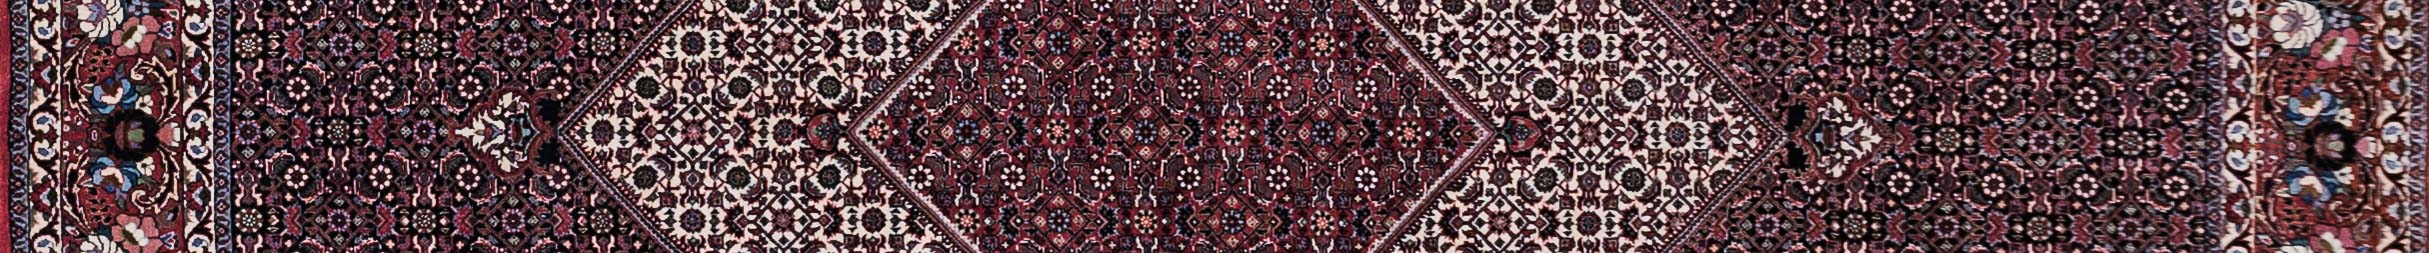 Bidjar Persian Carpet Rug N1Carpet Canada Montreal Tapis Persan 7500